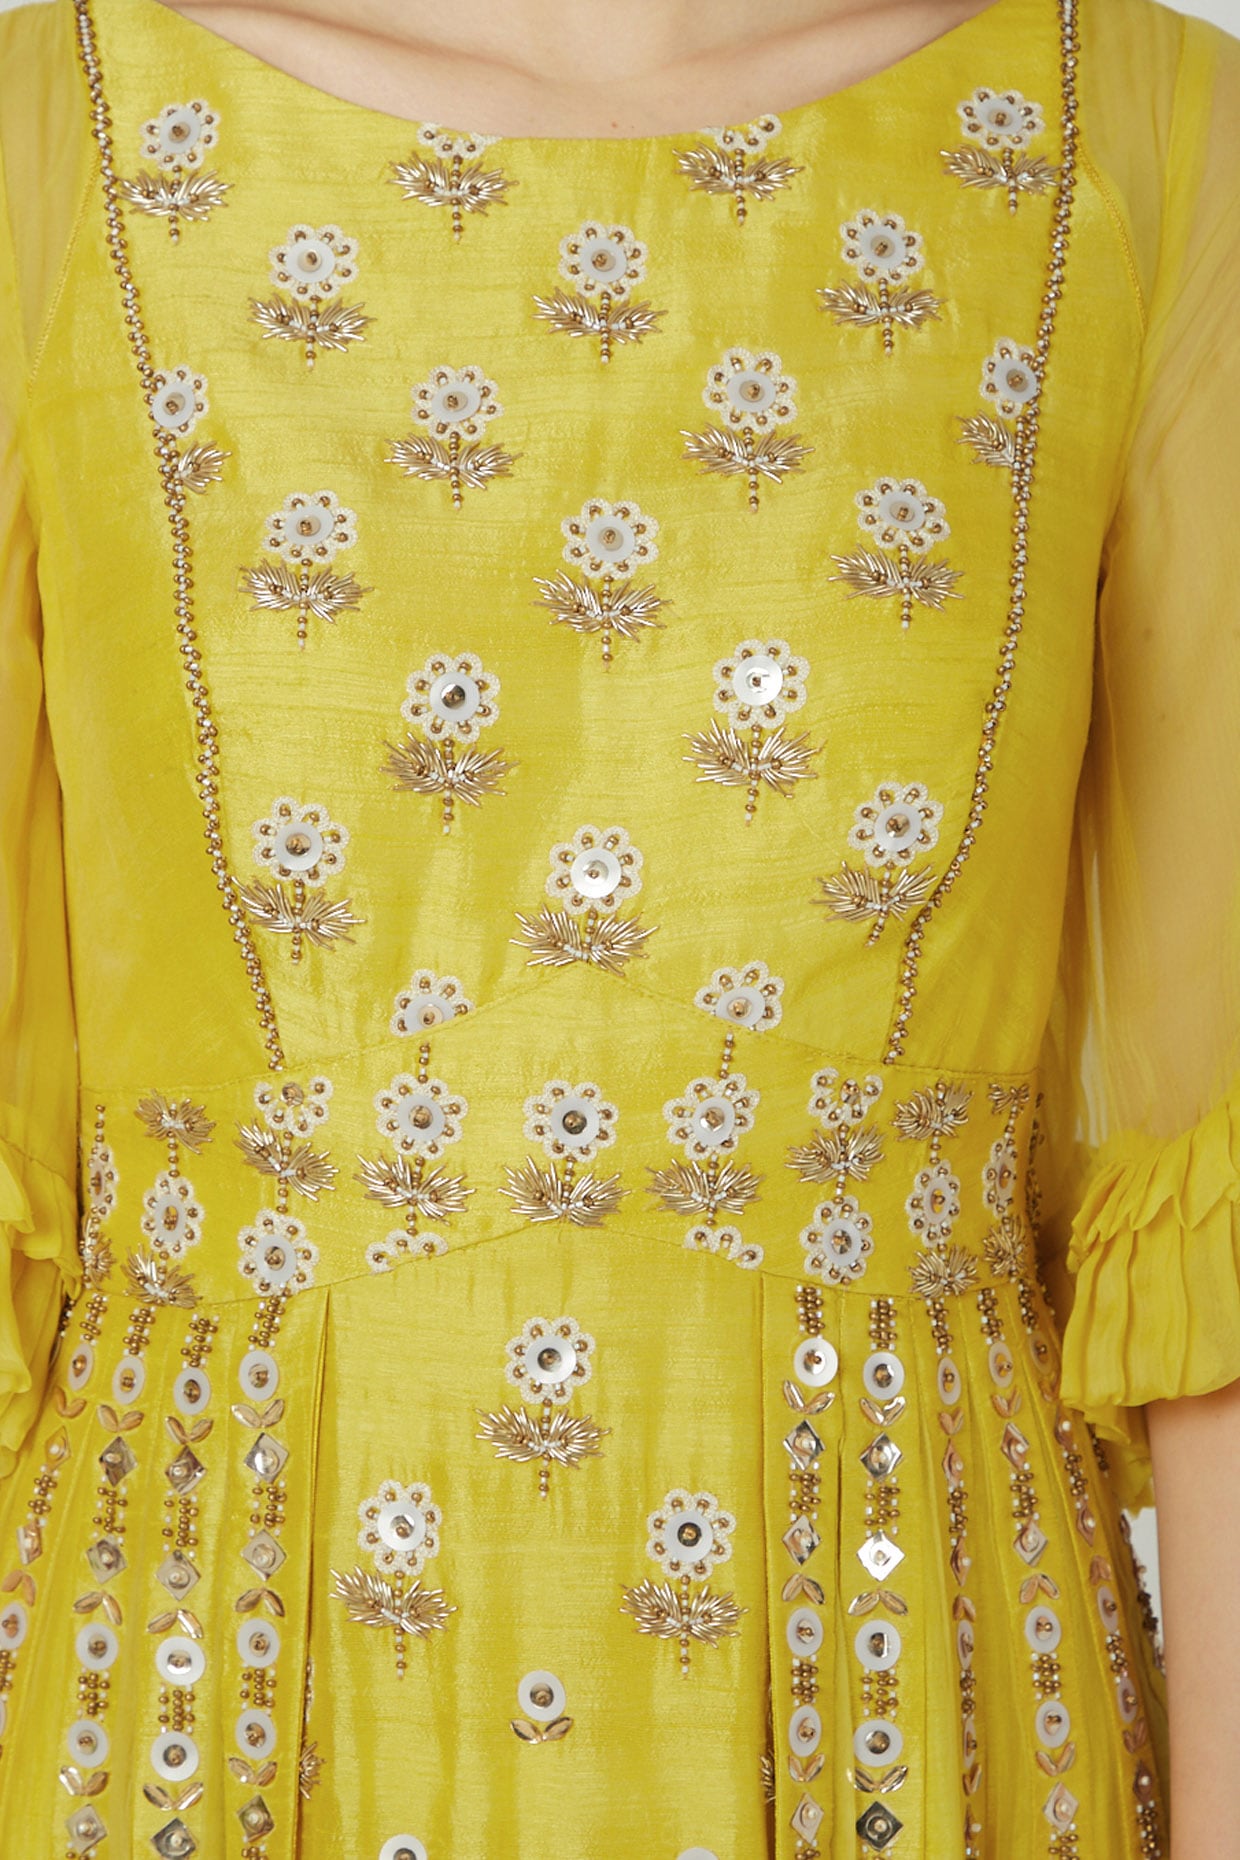 vyshyvanka blouse ethinic gown dresses lambadi clothing banjara ladies  dress | eBay